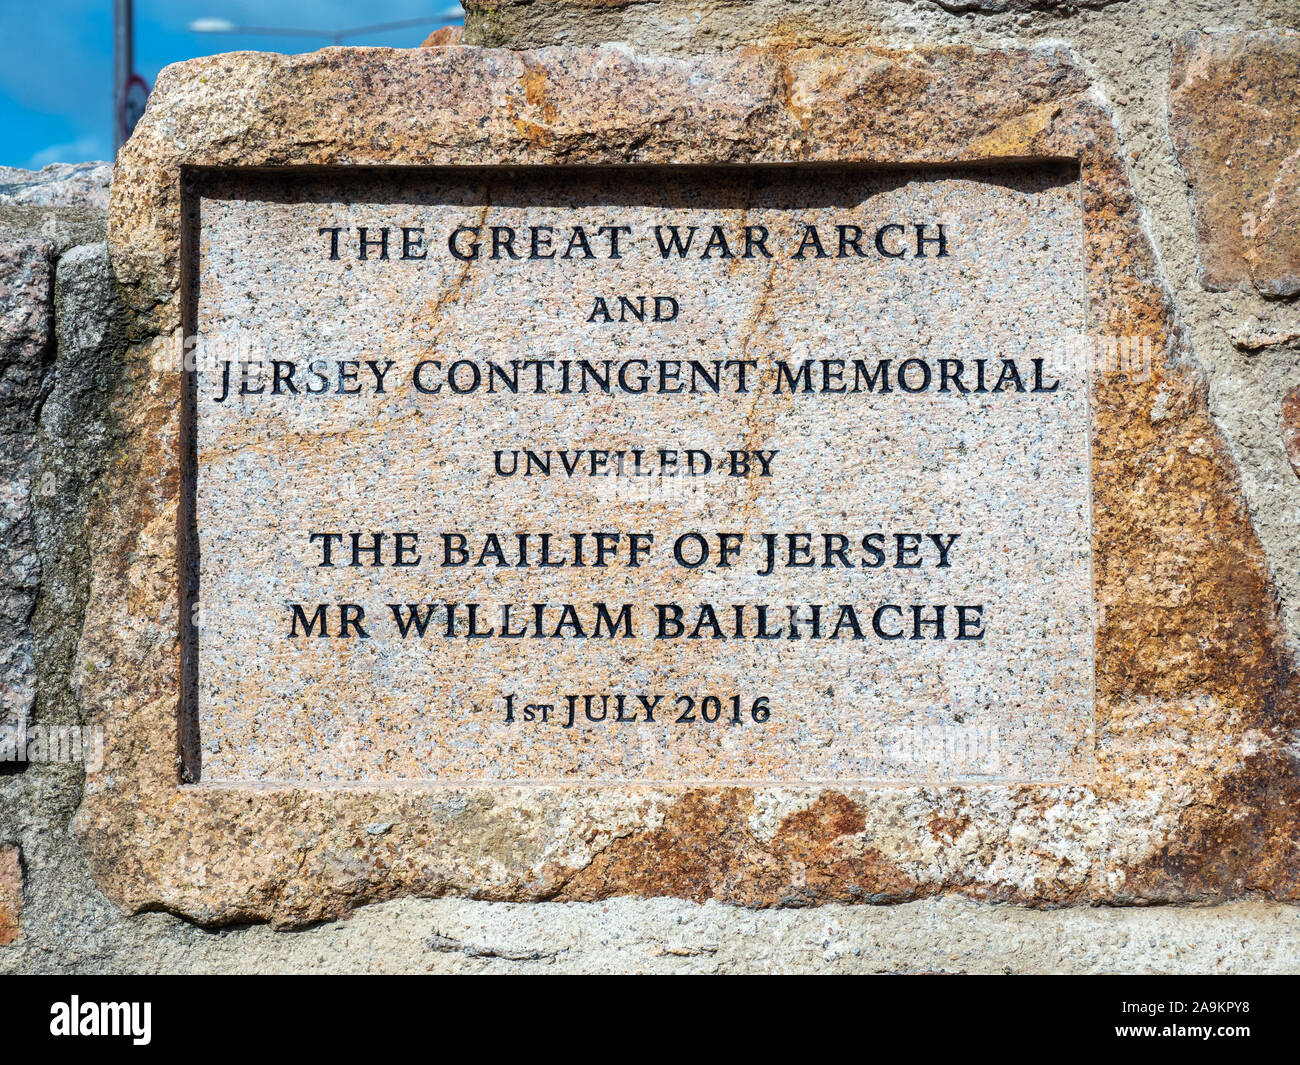 Plaque à la grande guerre Arch et Jersey Memorial Contingent, Jersey, Channel Islands. Banque D'Images